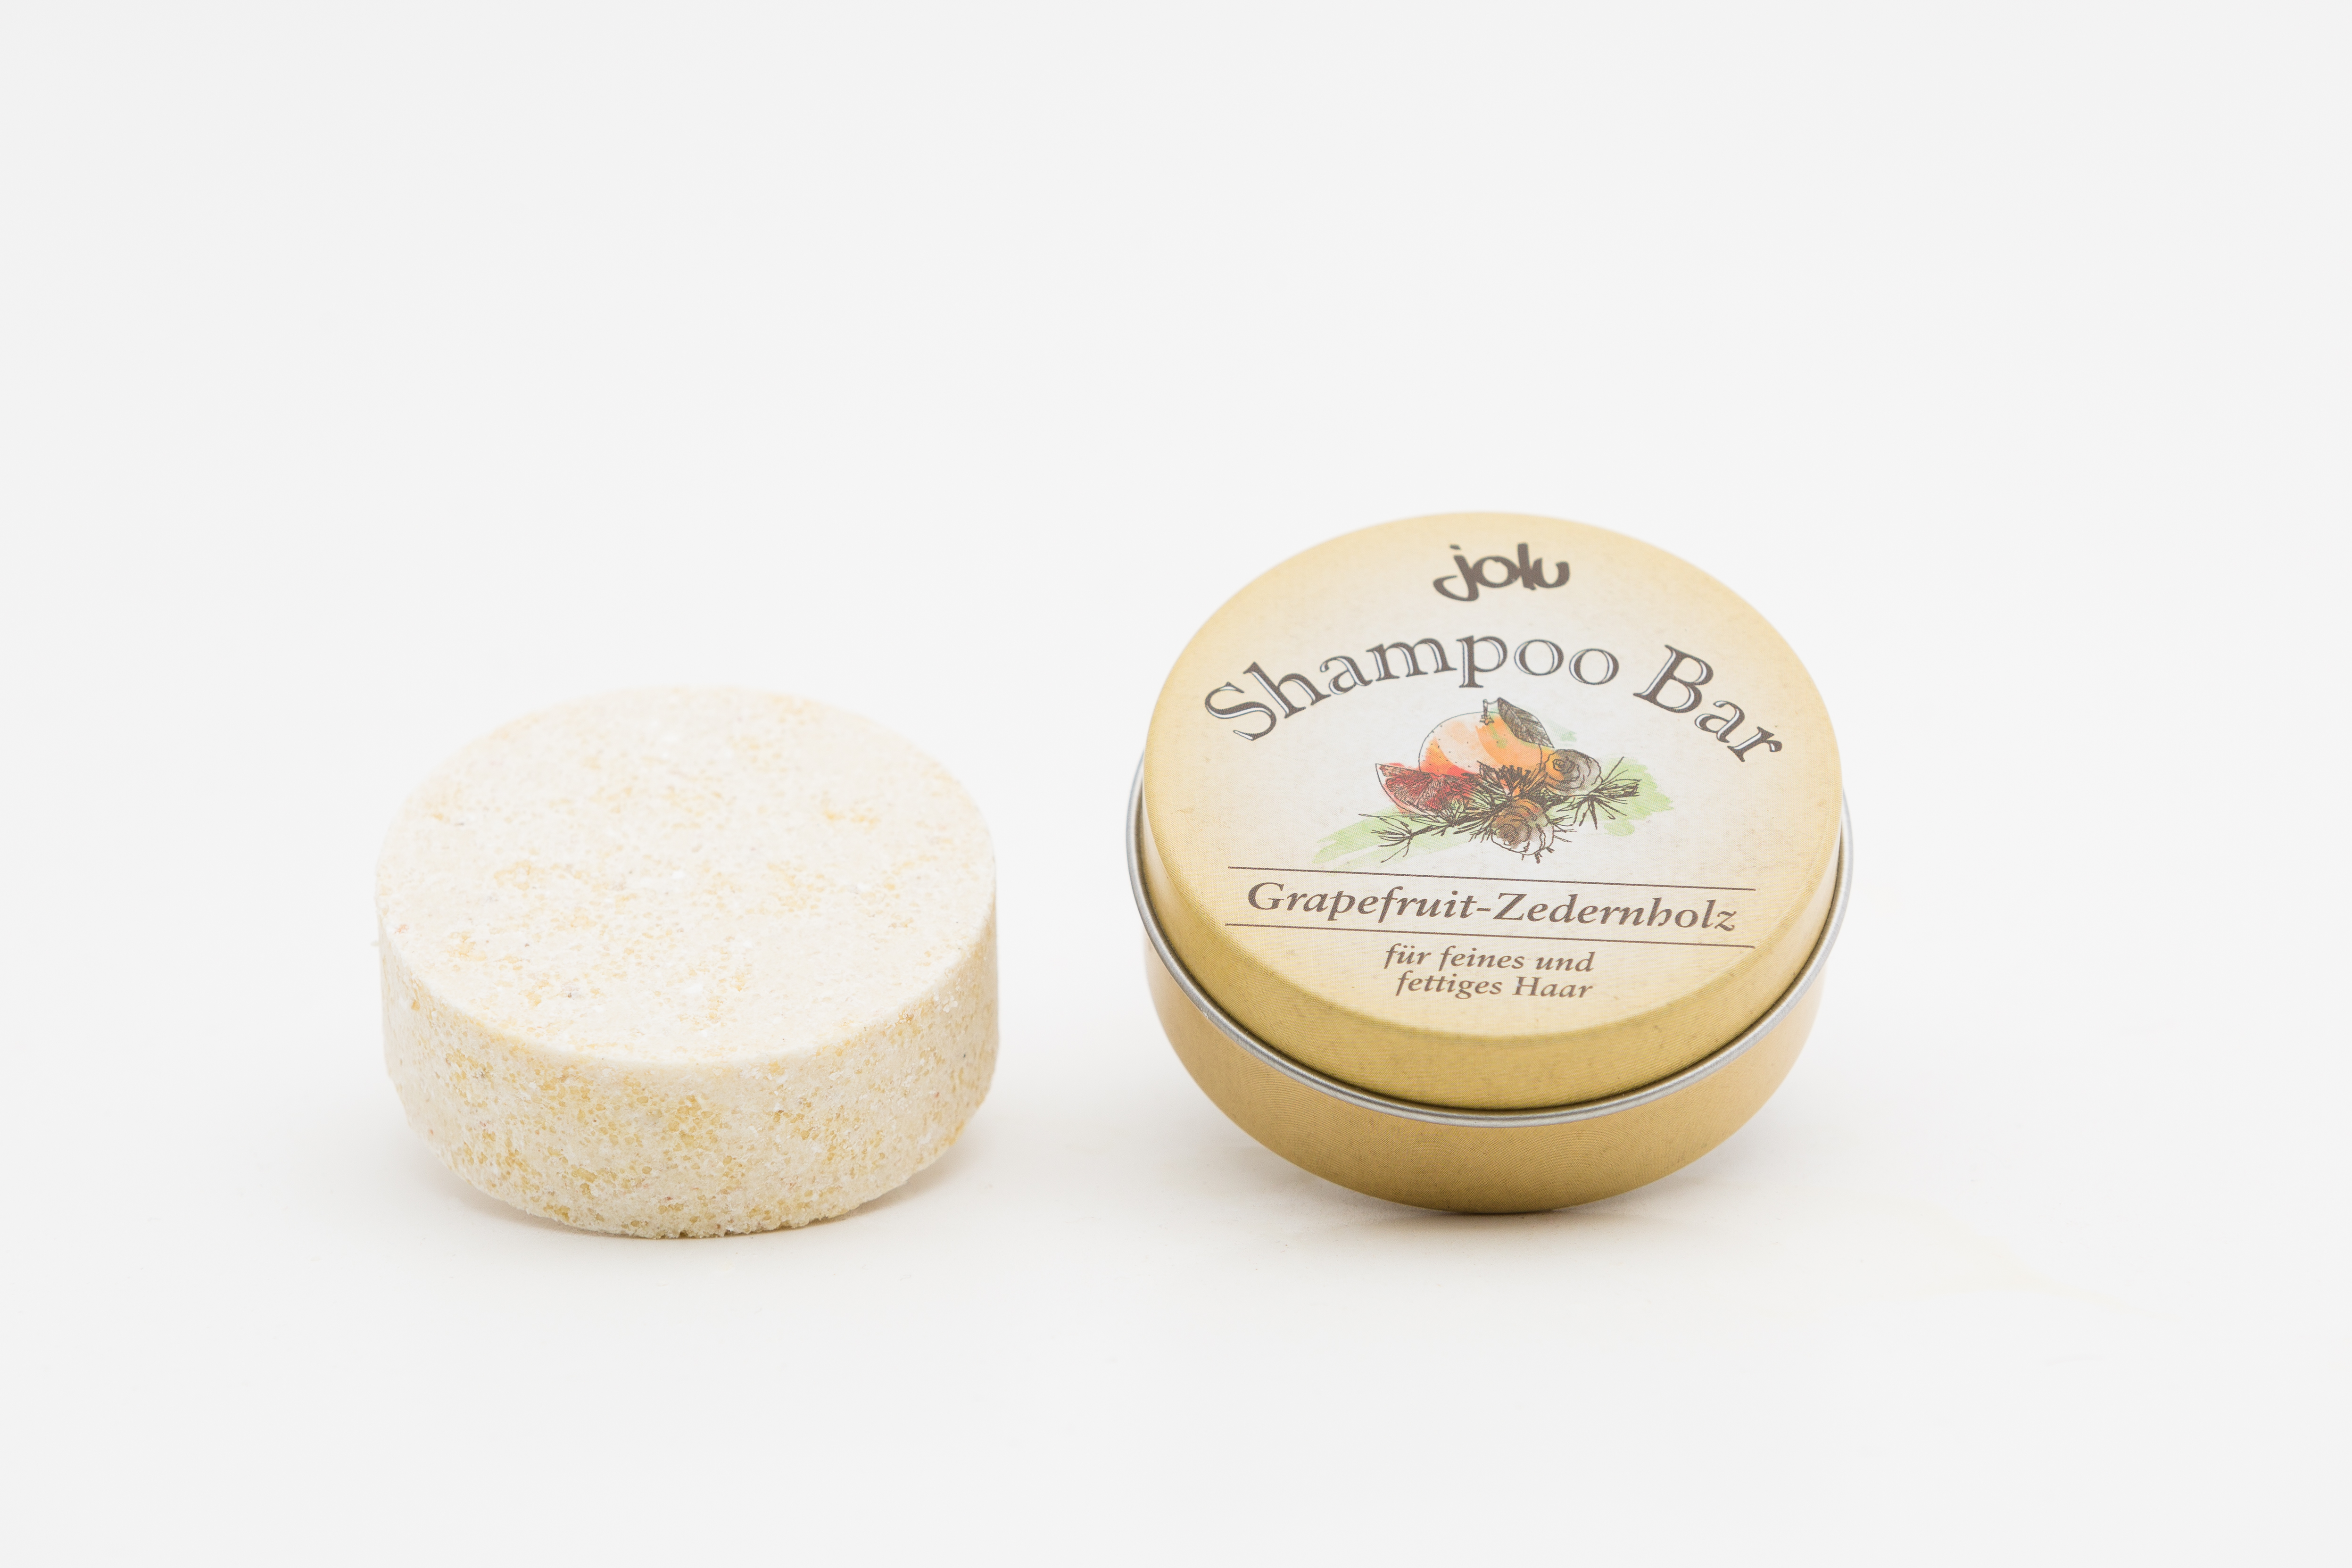 25. Jolu Shampoo Bar: Kombination hochwertiger Wirkstoffe, die Pflegespülung ist gleich enthalten